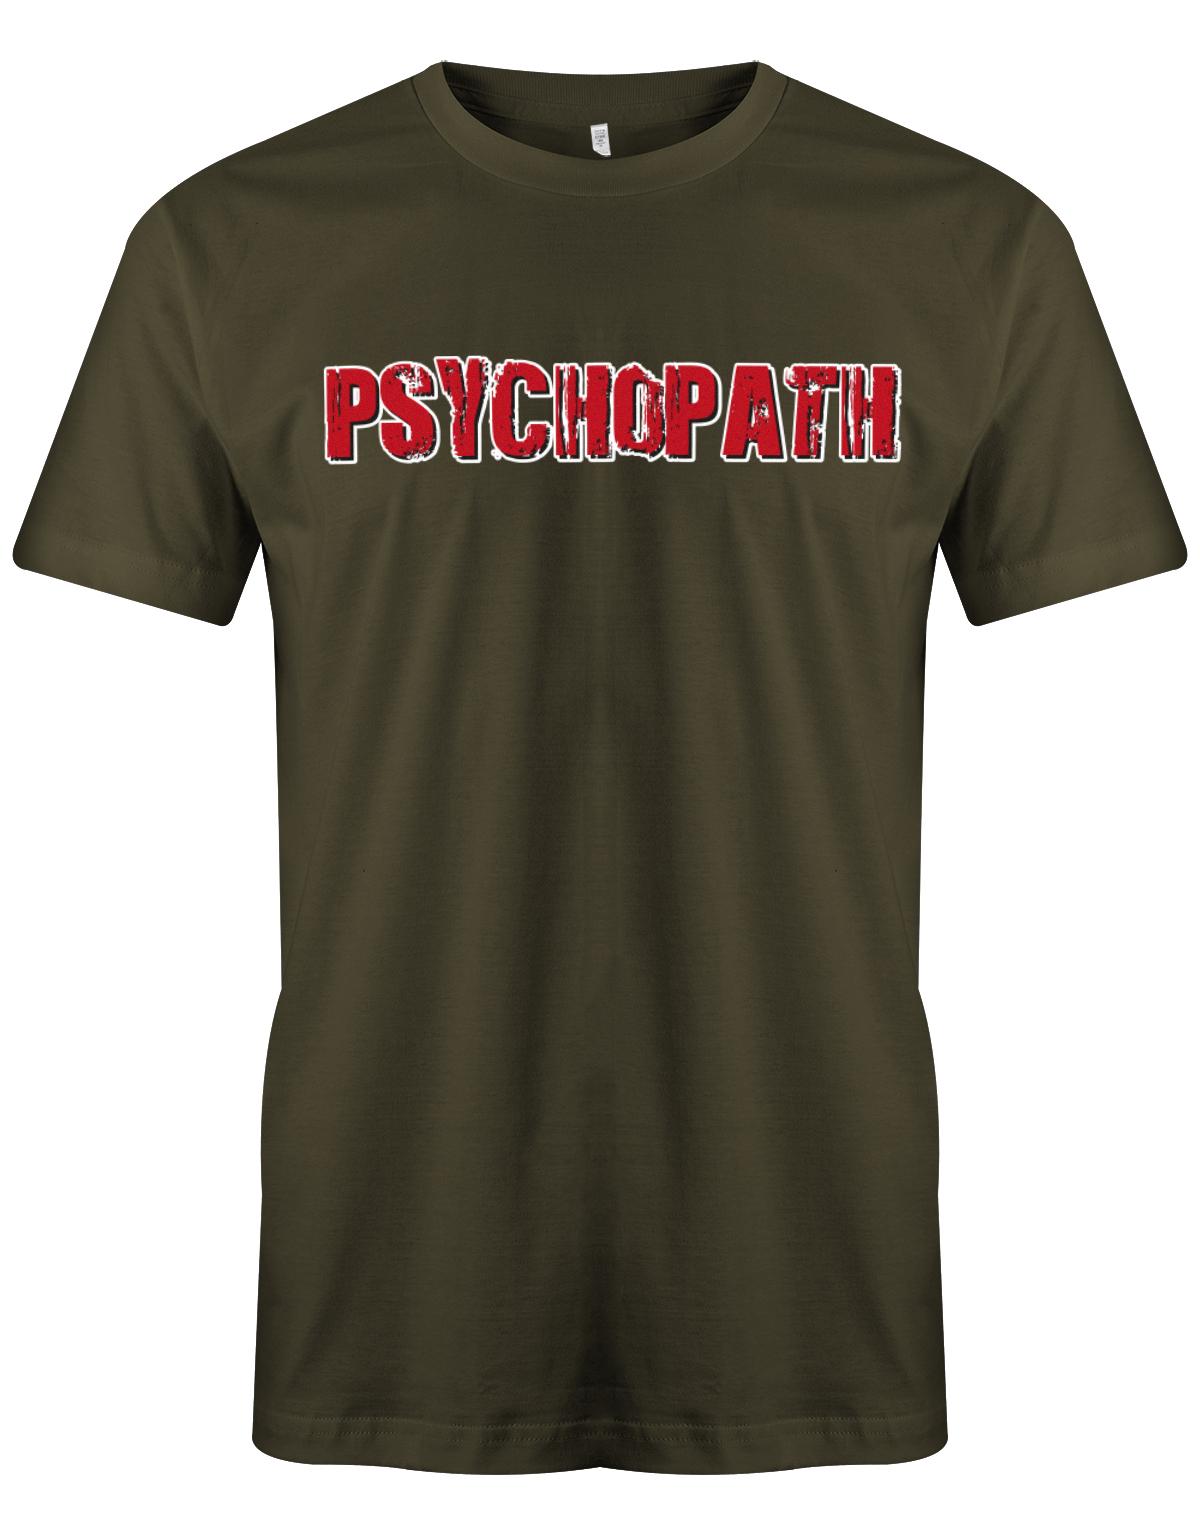 Psychopath-Kost-m-Shirt-Herren-Army